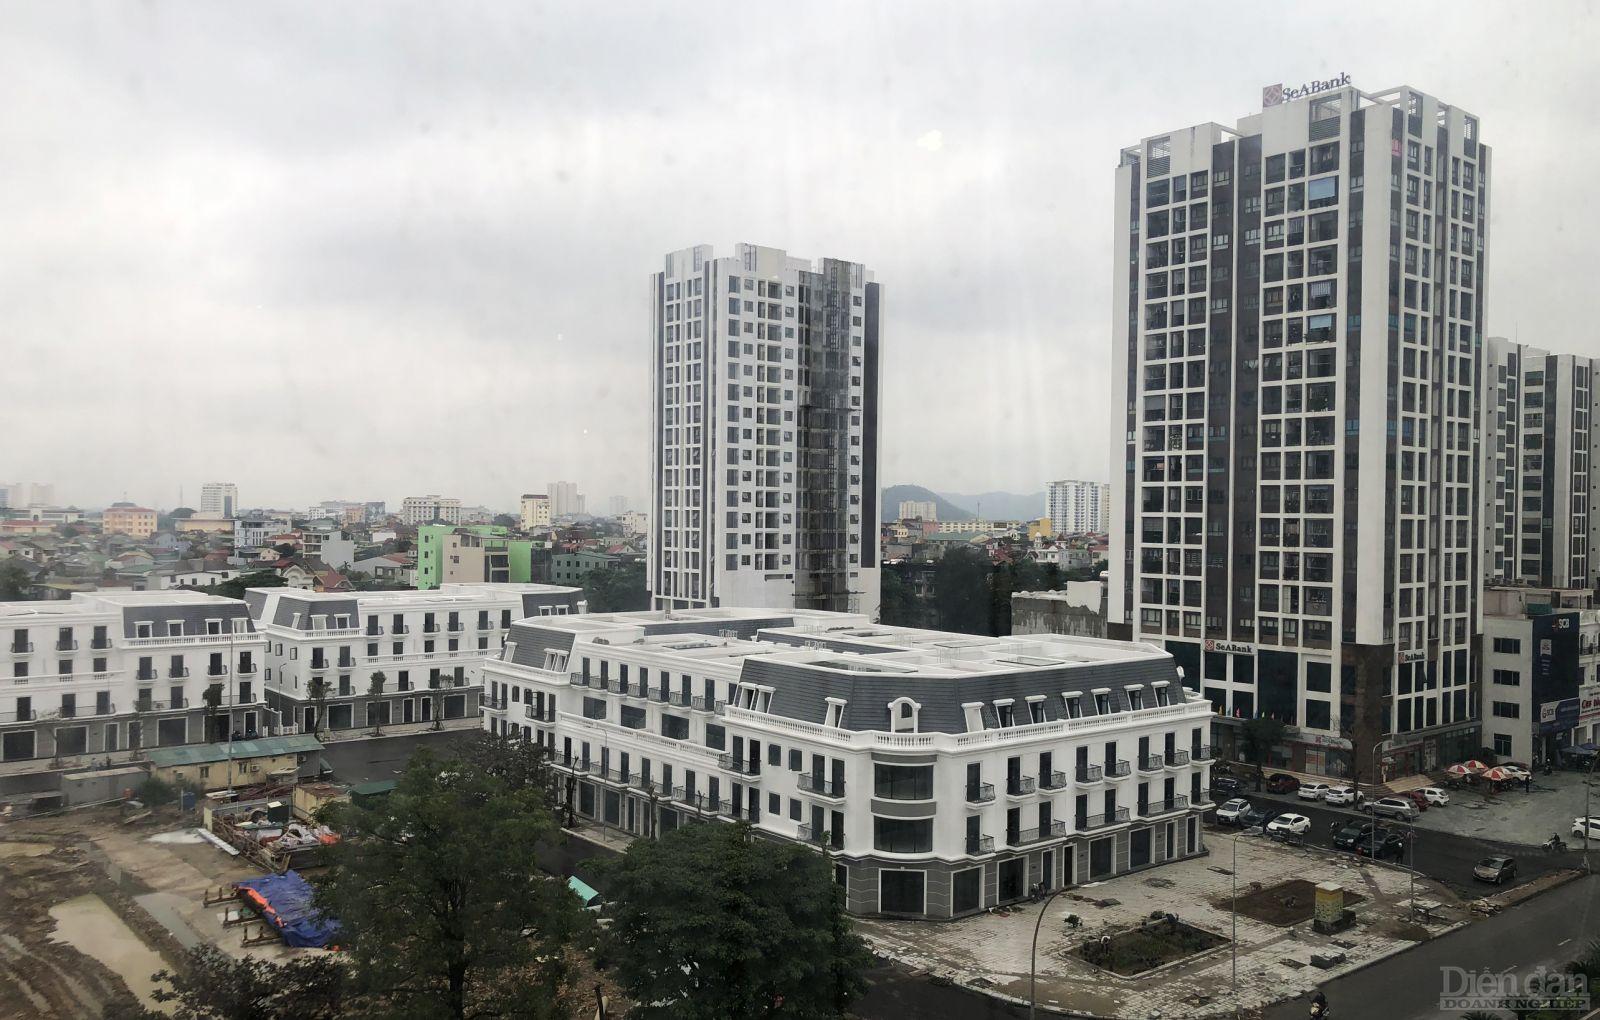 Nhiều dự án BĐS trên địa bàn đang gấp rút thi công thực hiện, hứa hẹn thị trường ở Nghệ An sẽ sôi động, náo nhiệt trở lại